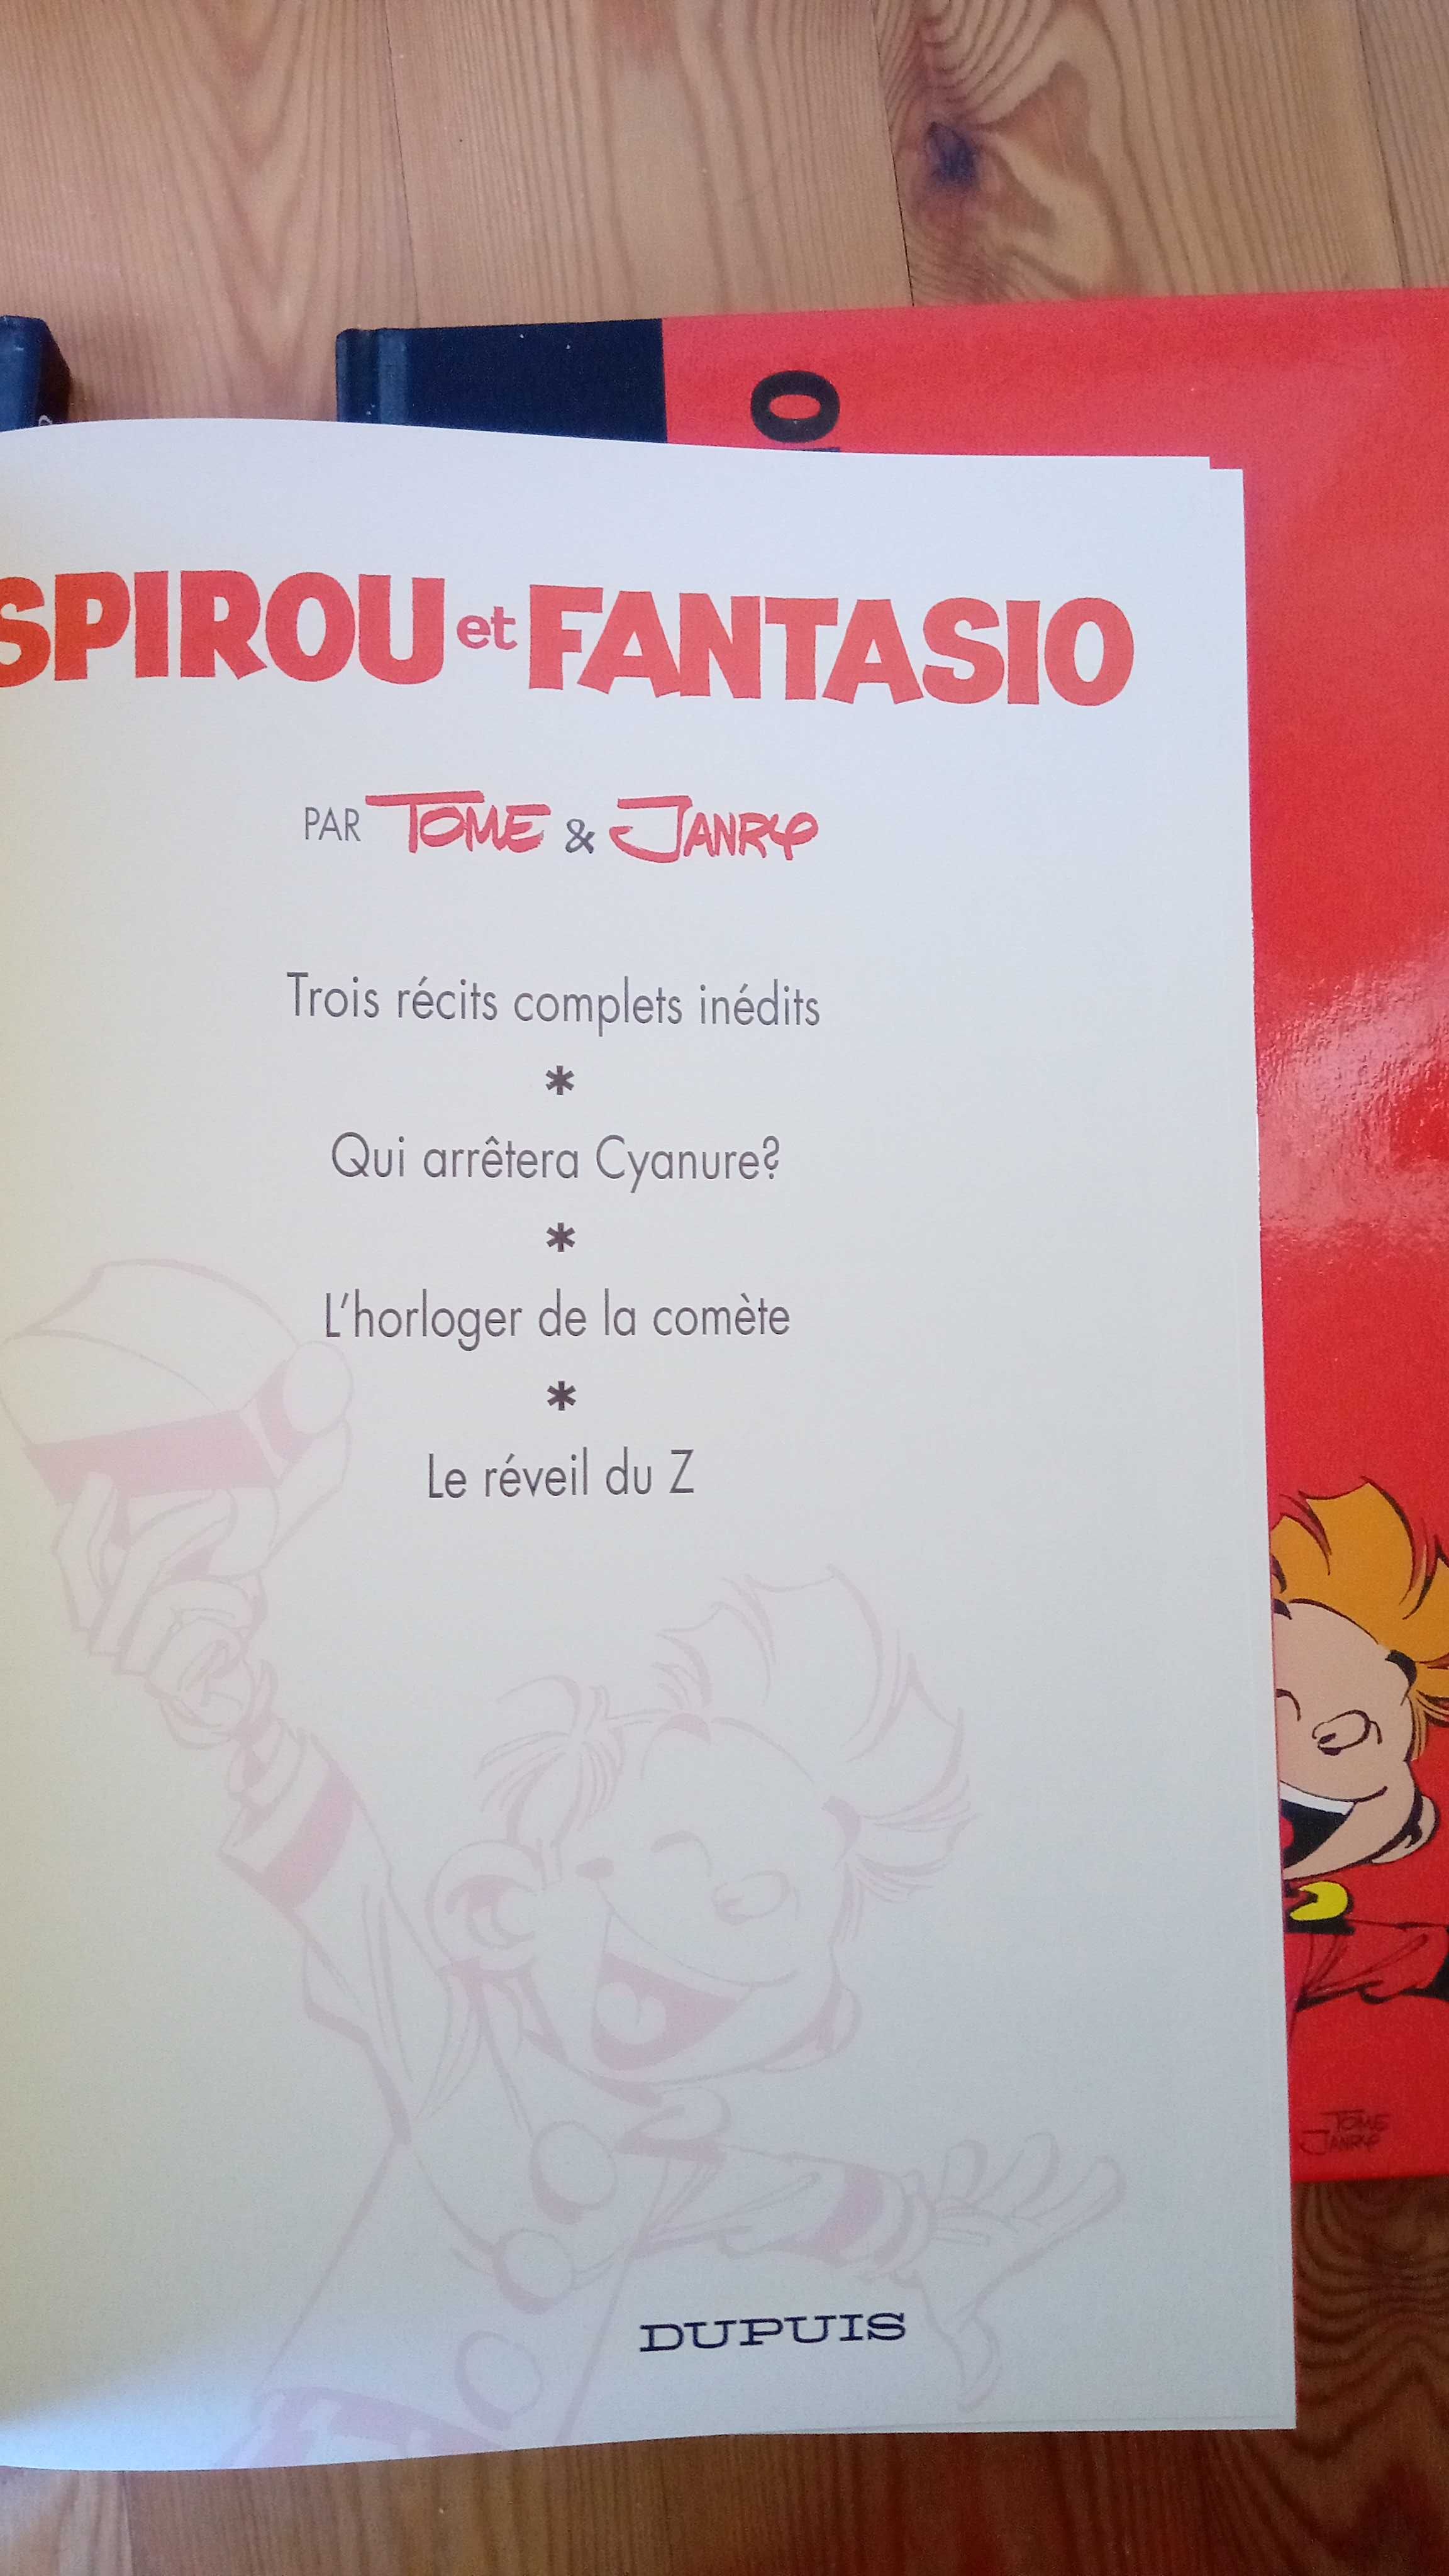 Spirou, edições deluxe da Dupuis (1996)